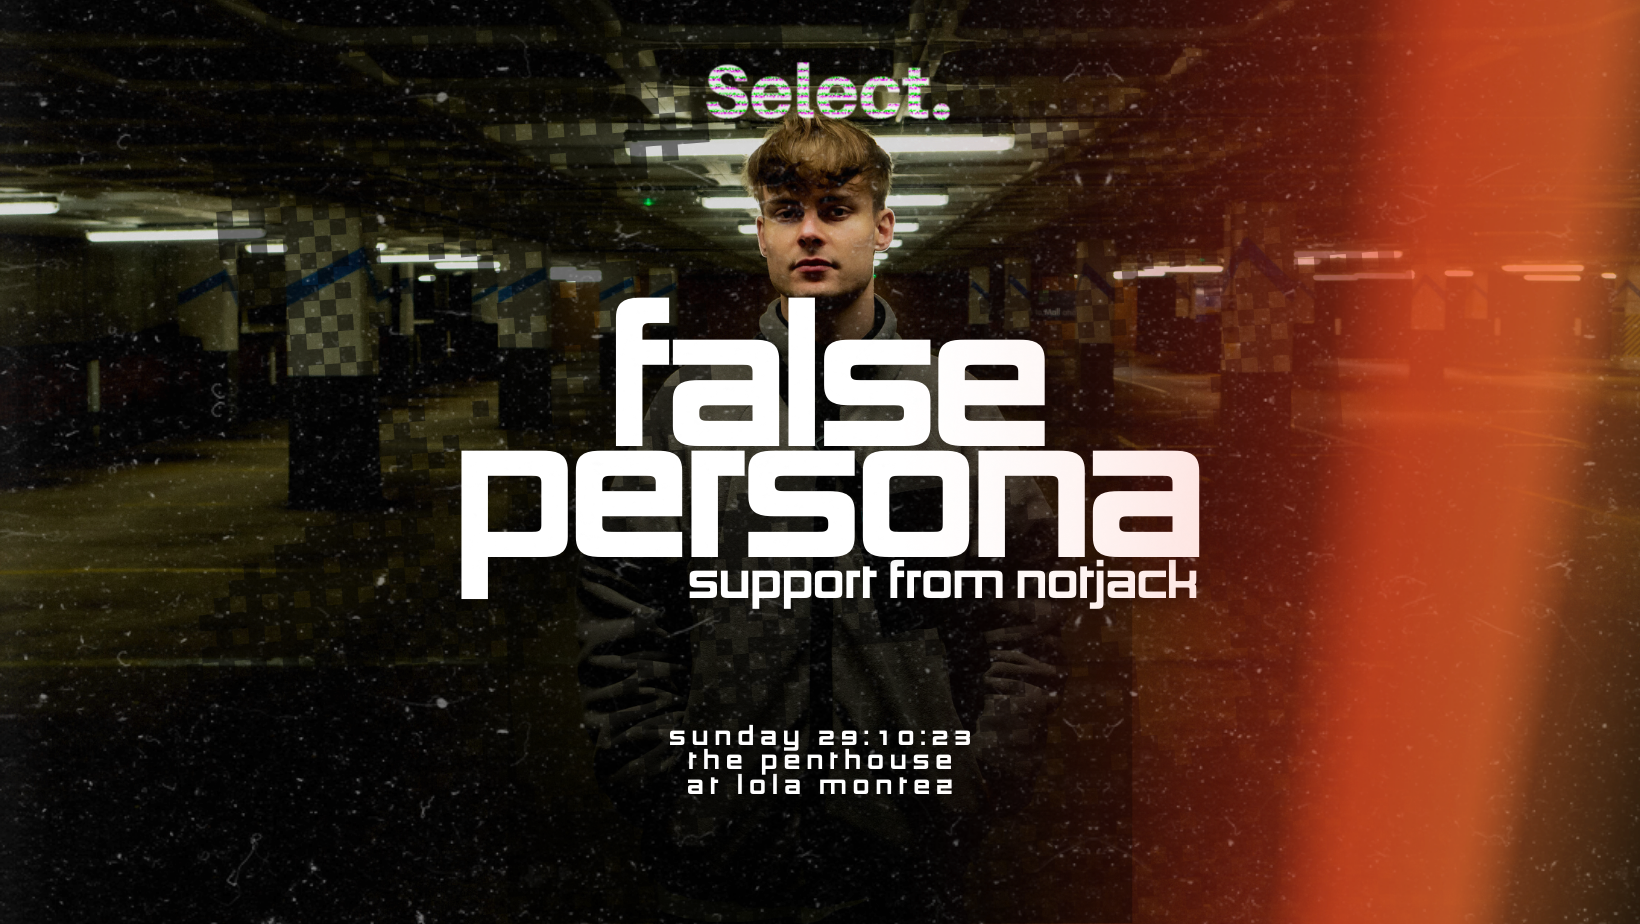 Select presents: False Persona & notjack  - フライヤー裏